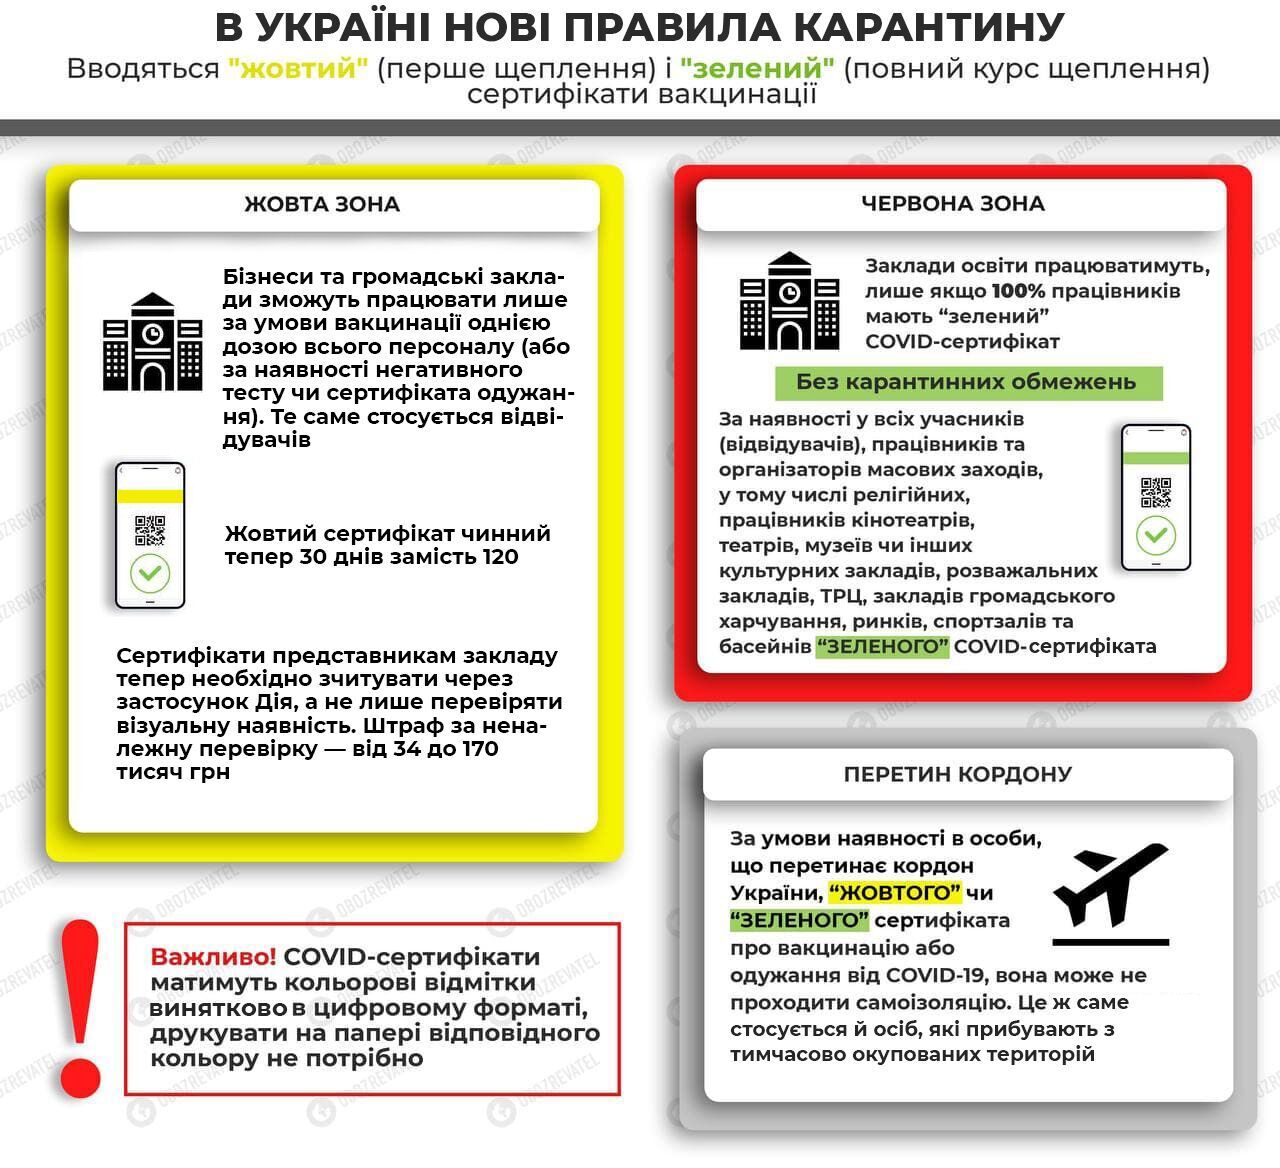 Правила адаптивного карантина в Украине